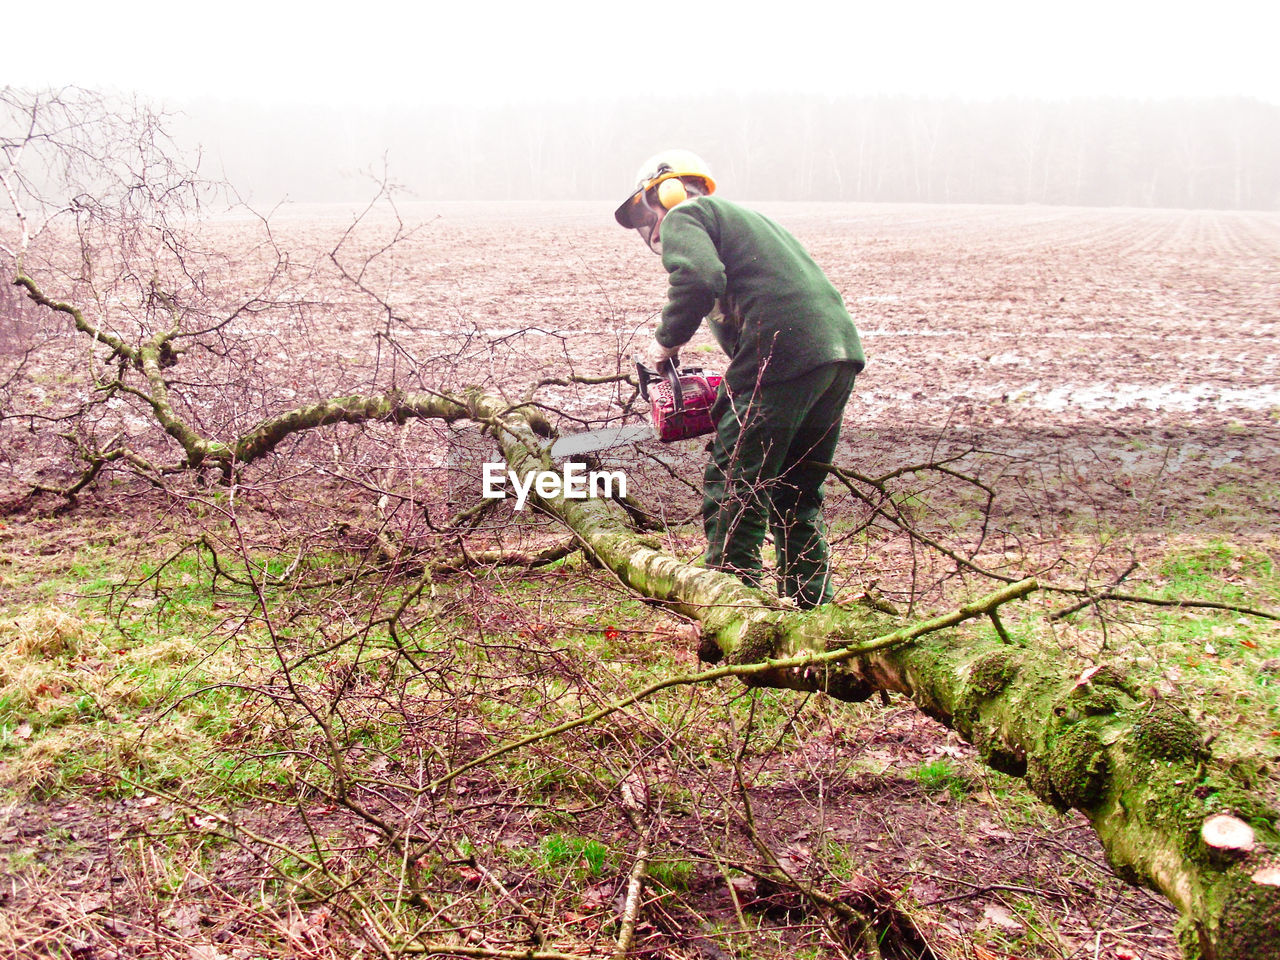 Man cutting fallen tree on field